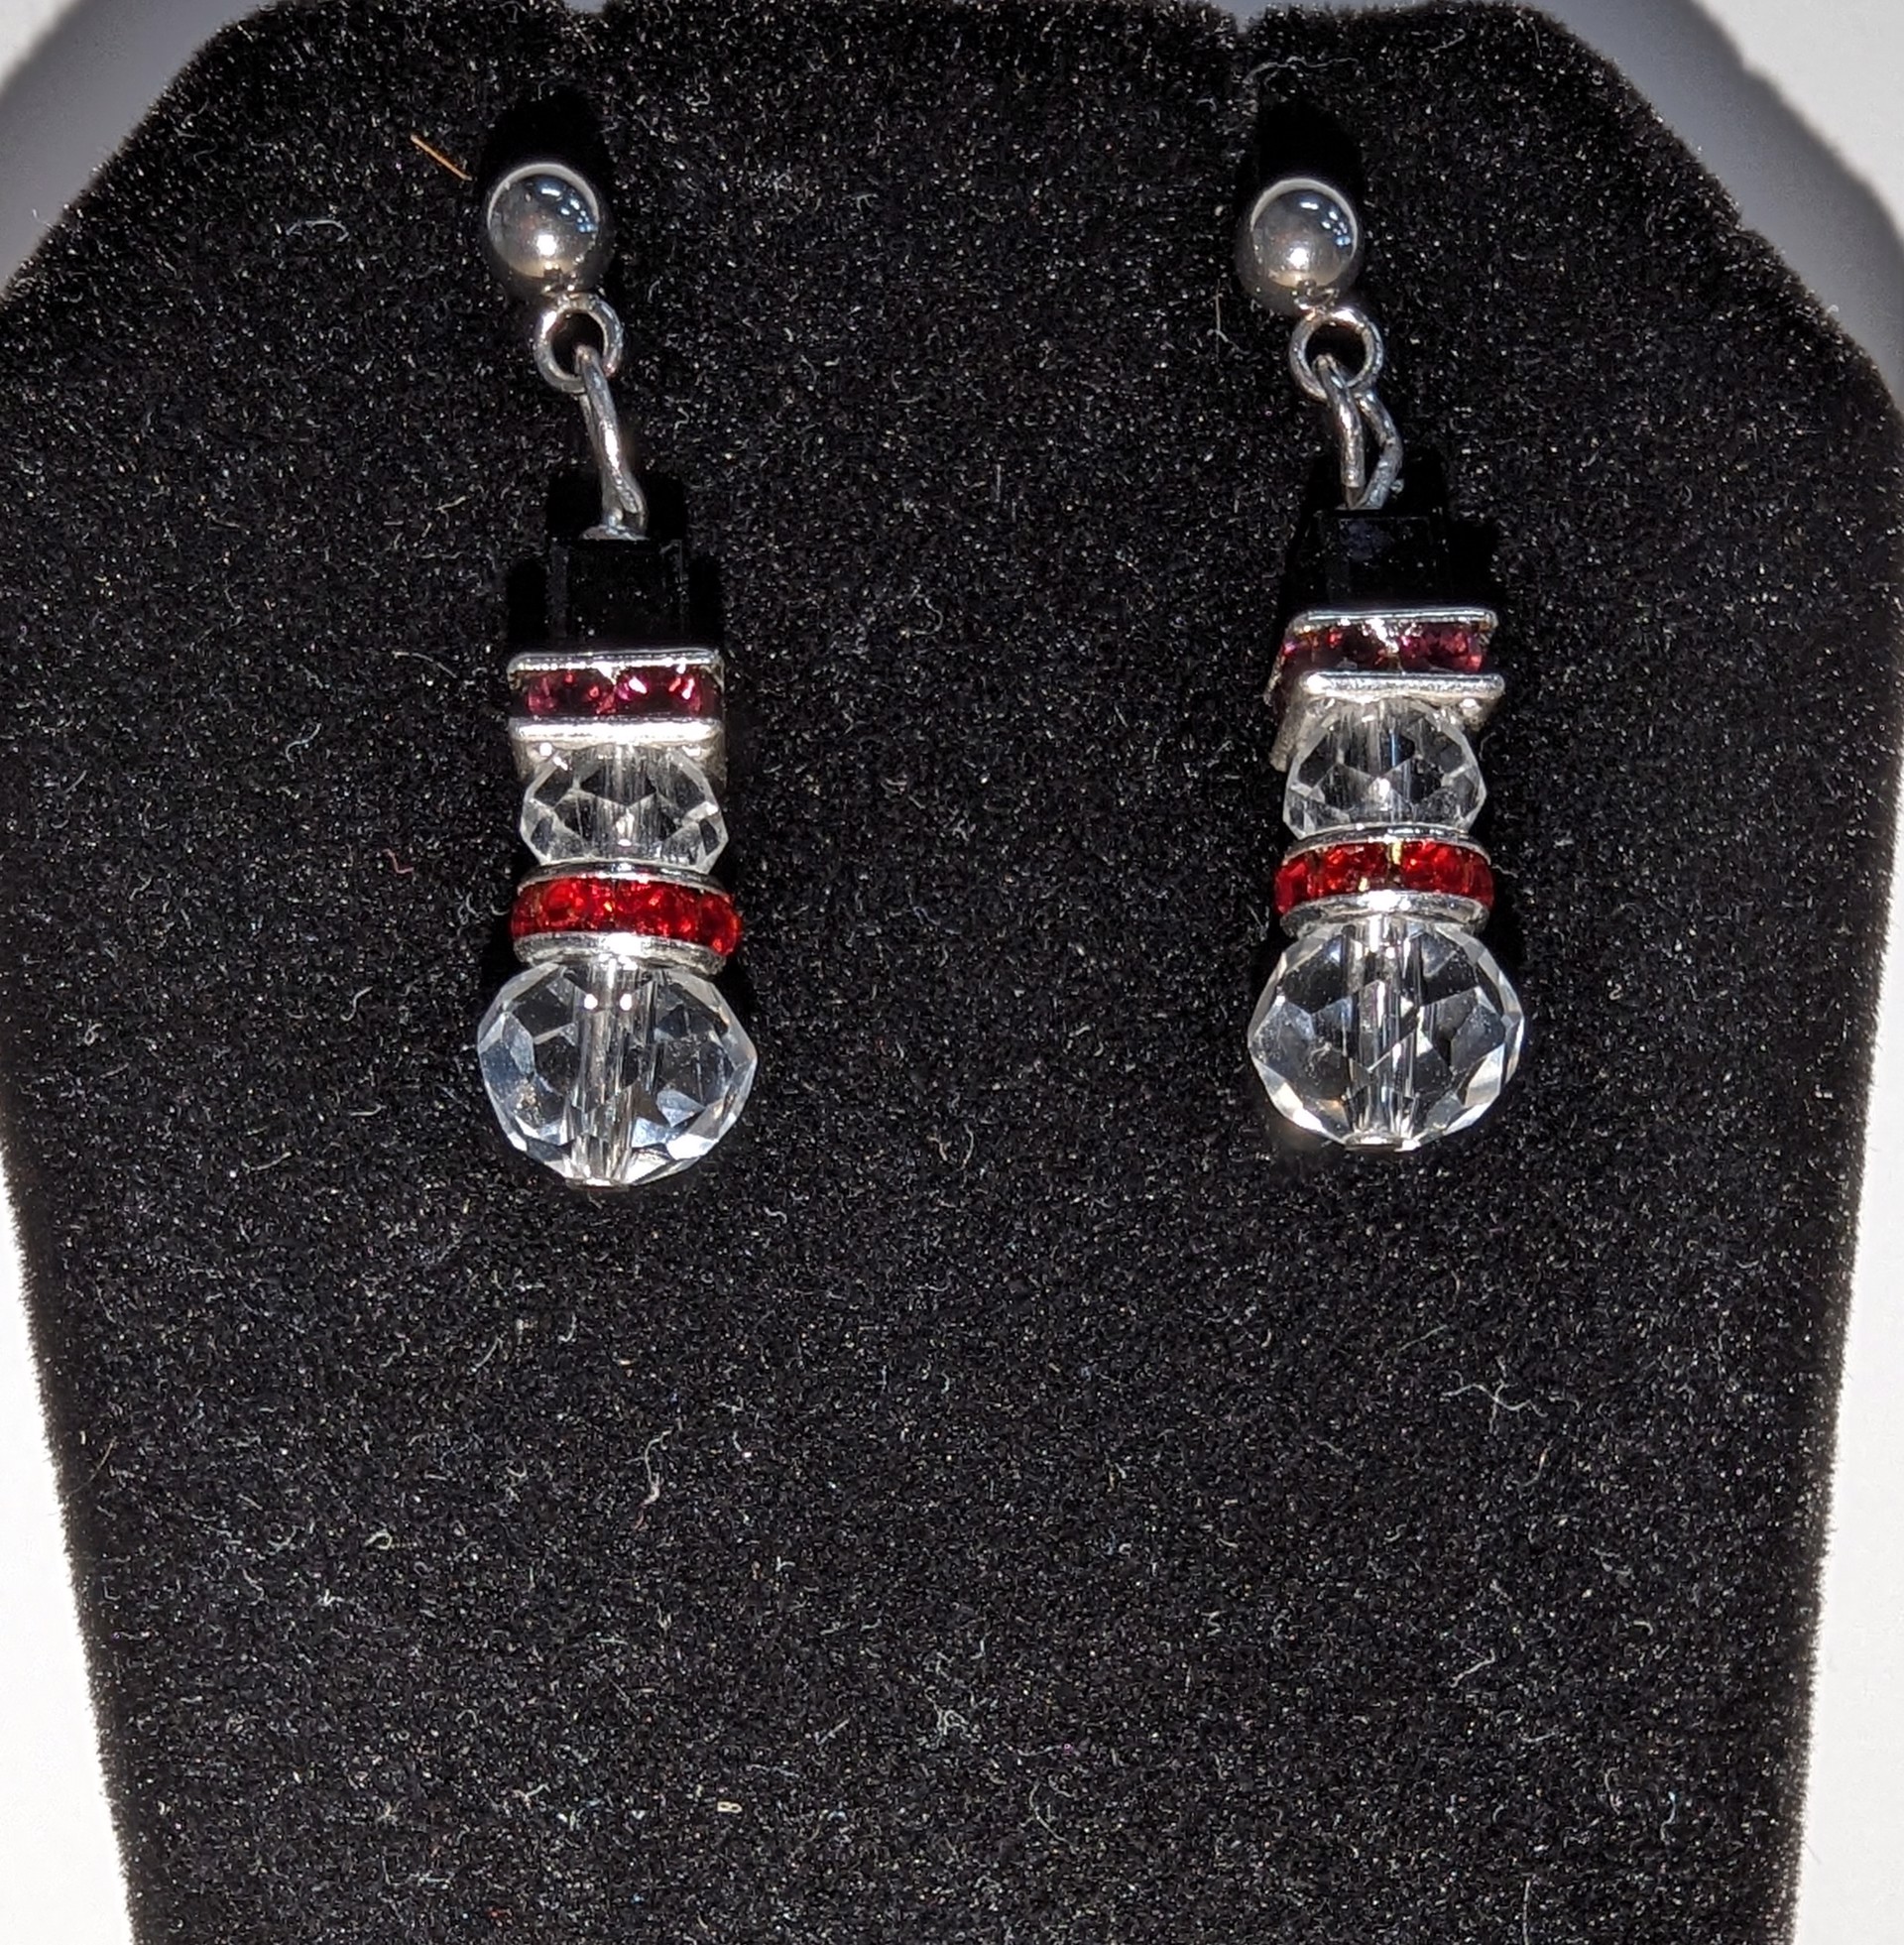 Snowman earrings by Betty Binder